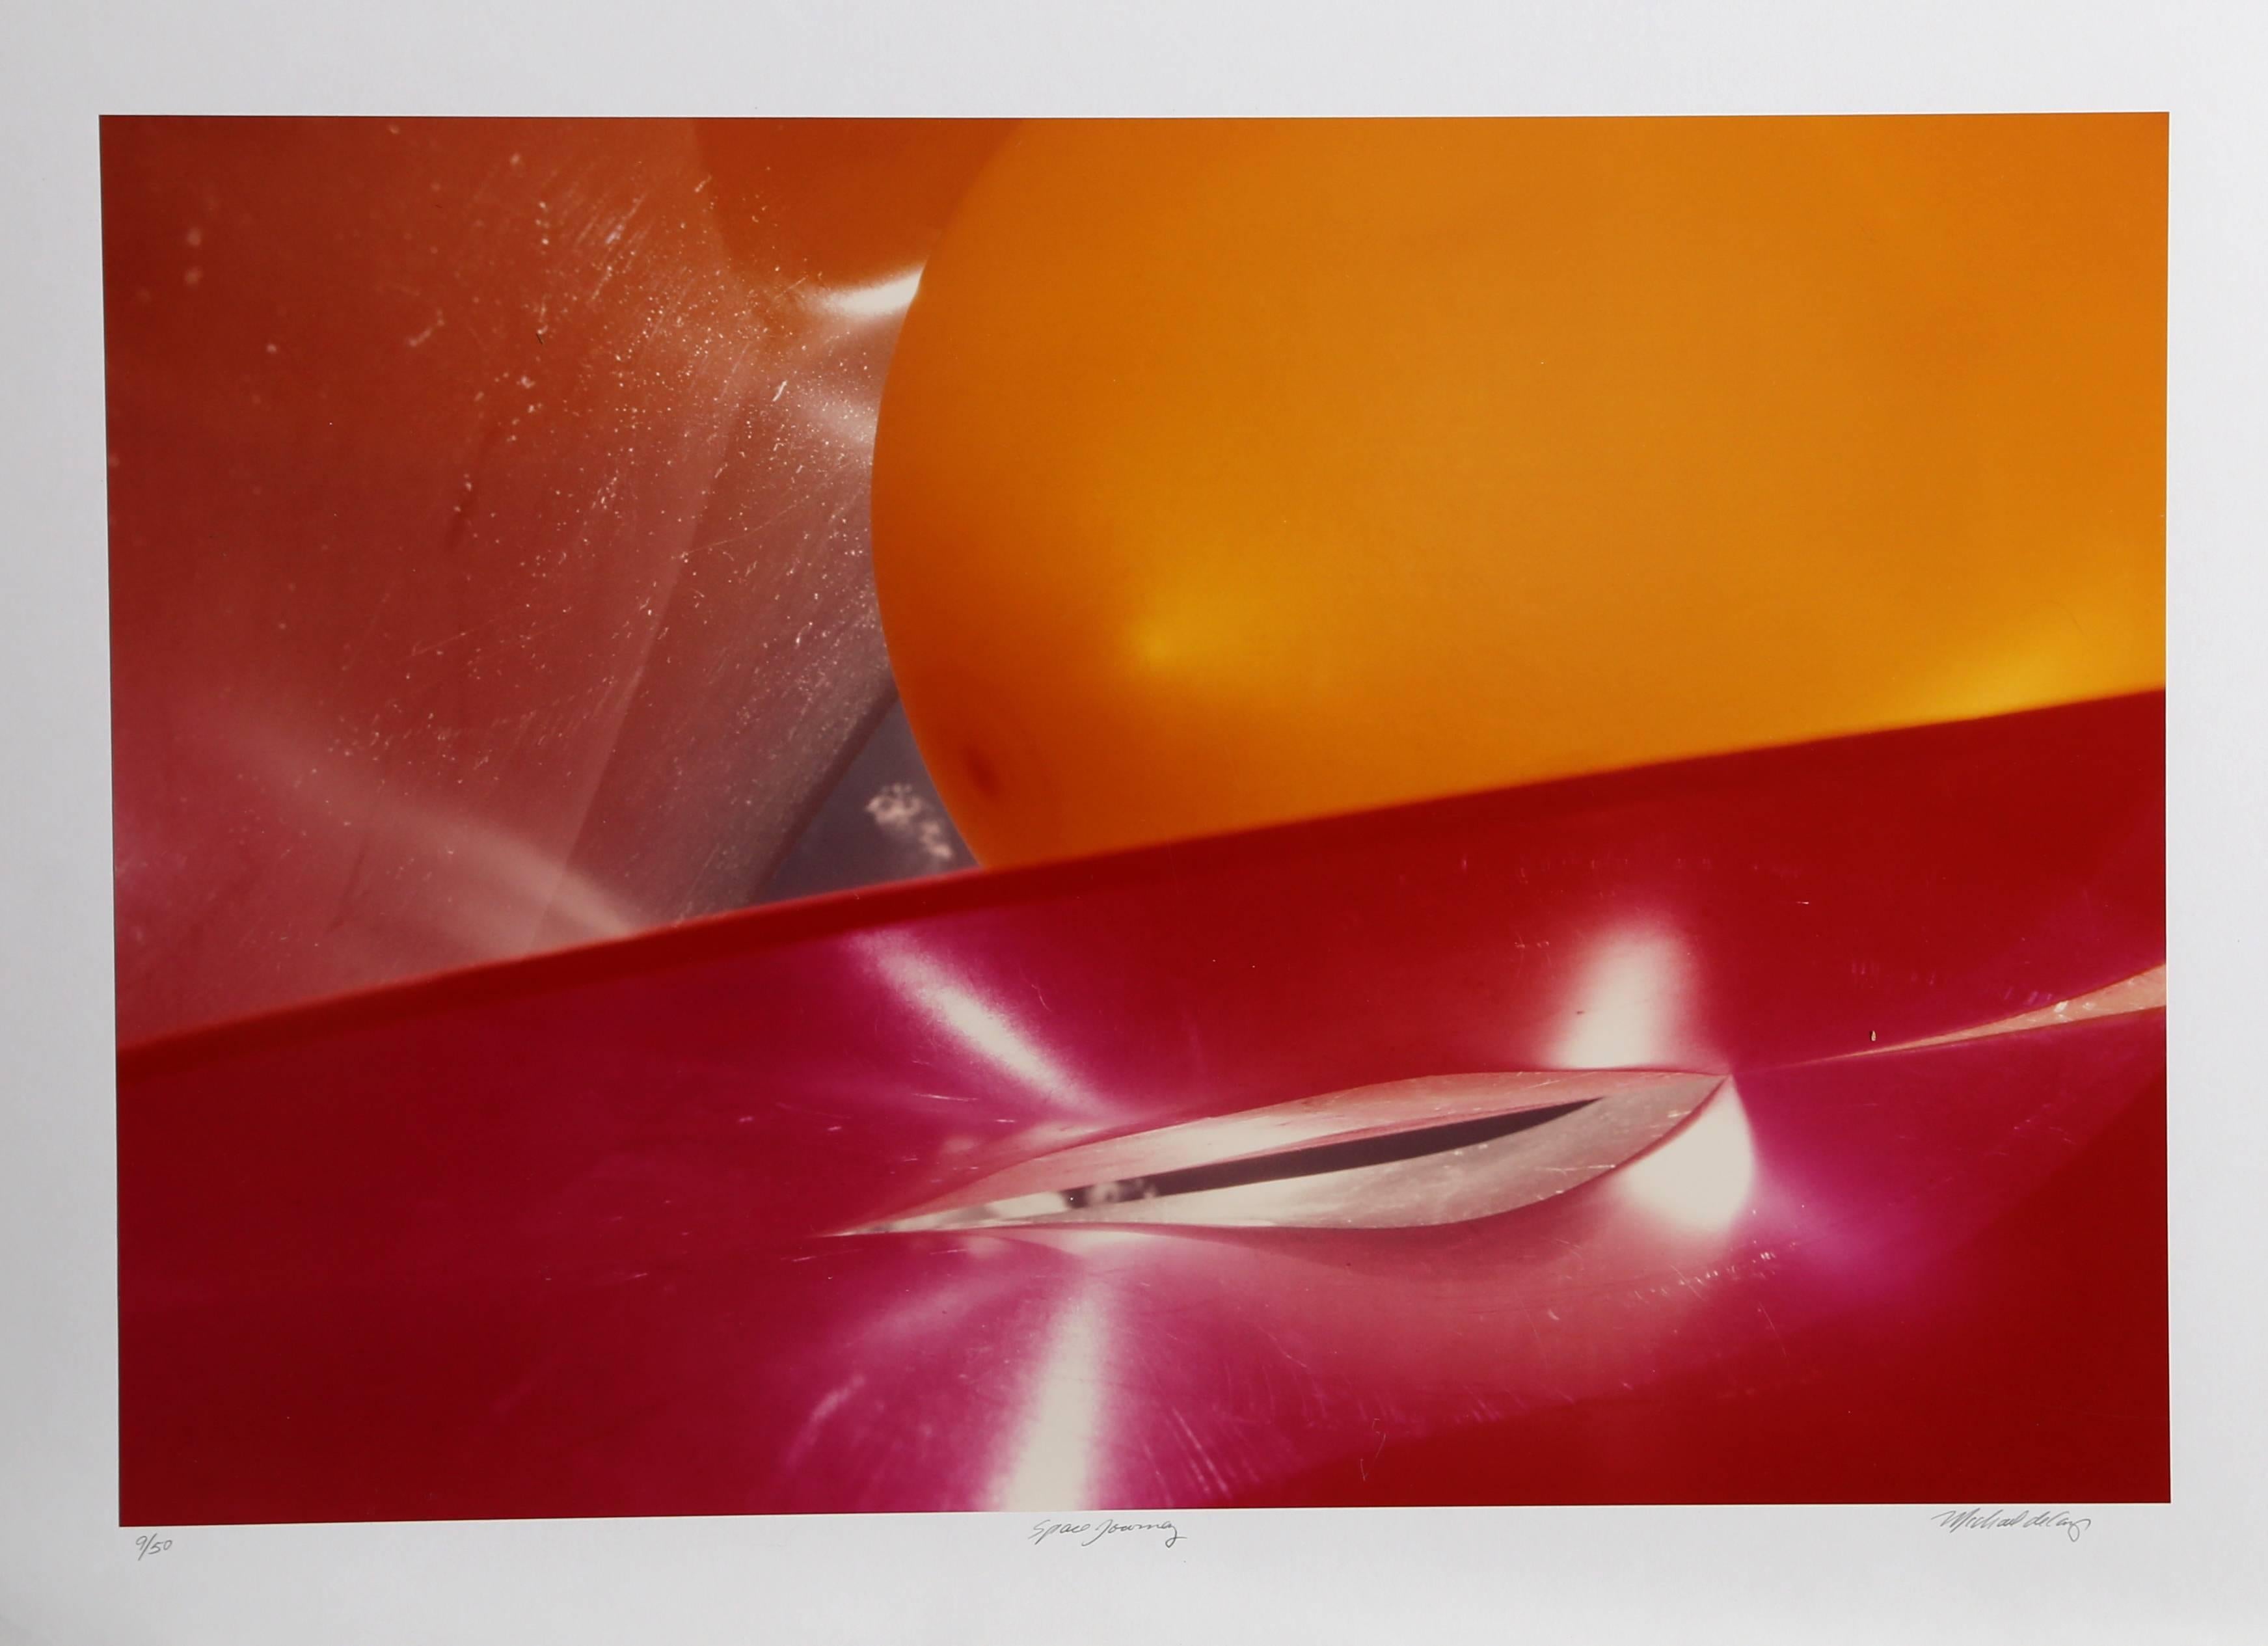 Cette photographie a été réalisée par l'artiste américain Michael DeCamp, passionné de plongée sous-marine. Les photos abstraites de DeCamp sont énigmatiques et les interactions entre les formes et les couleurs sont à la fois familières et étranges.